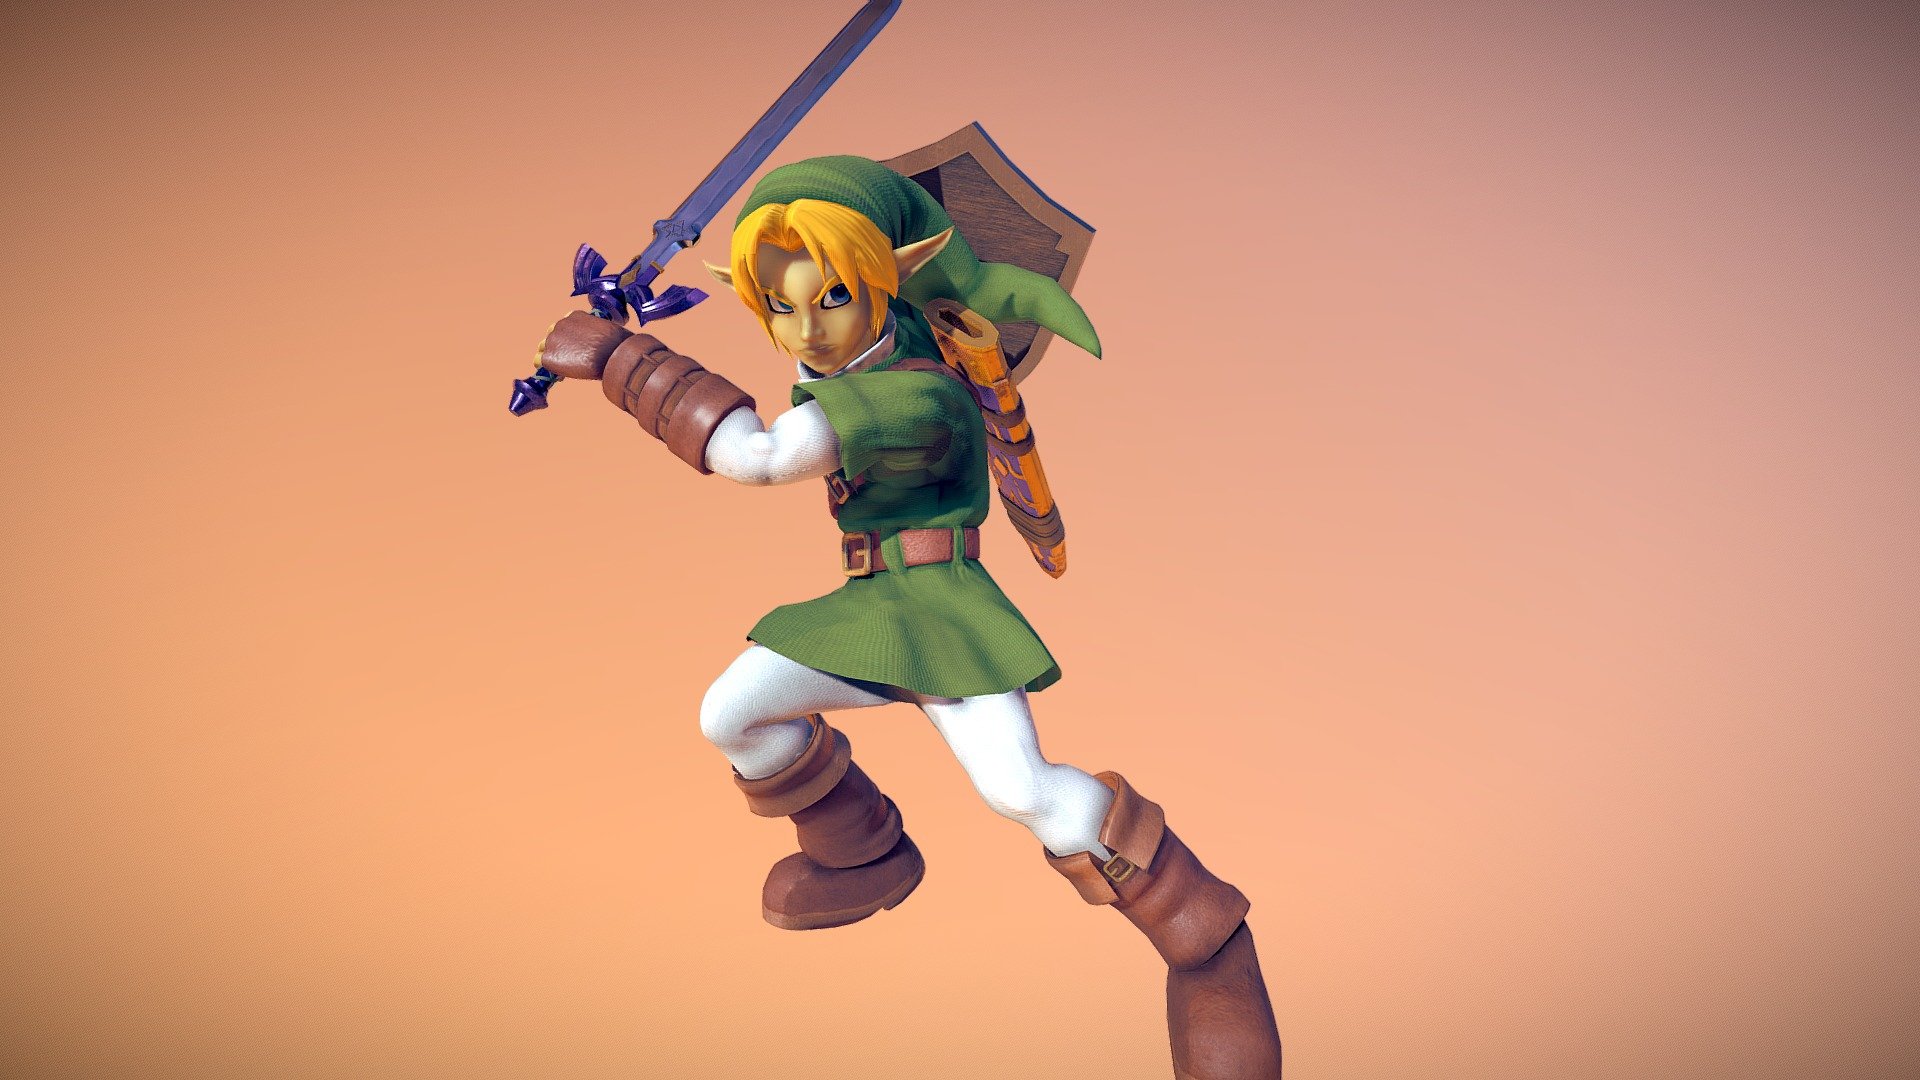 Artstation Reimagining Link From The Legend Of Zelda Ocarina Of Time